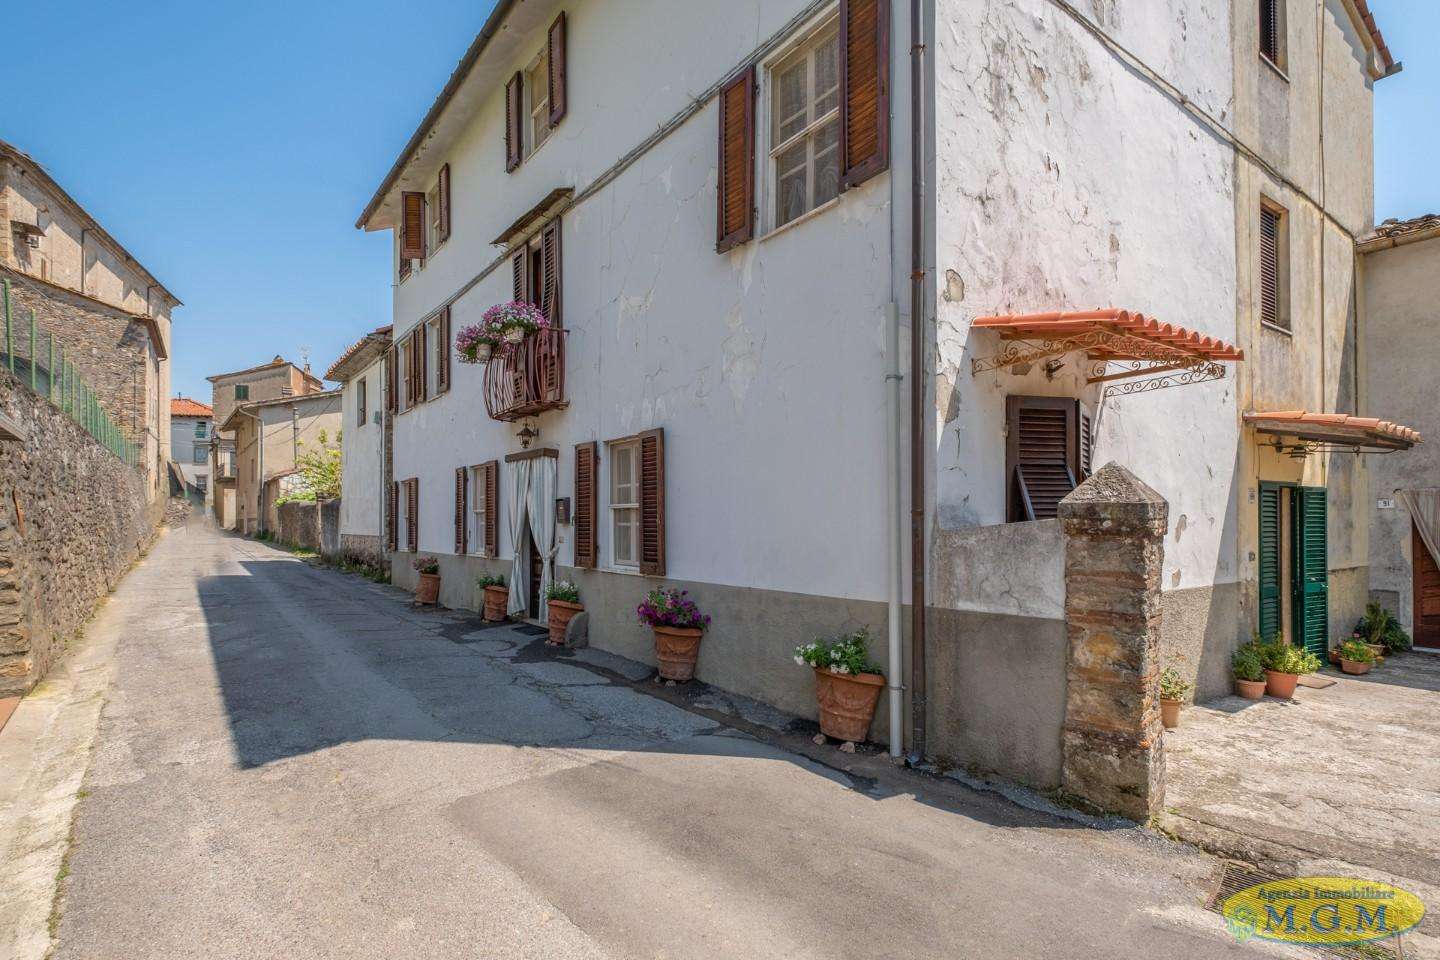 Palazzo - Stabile in Vendita a Capannori Via della Ruga,